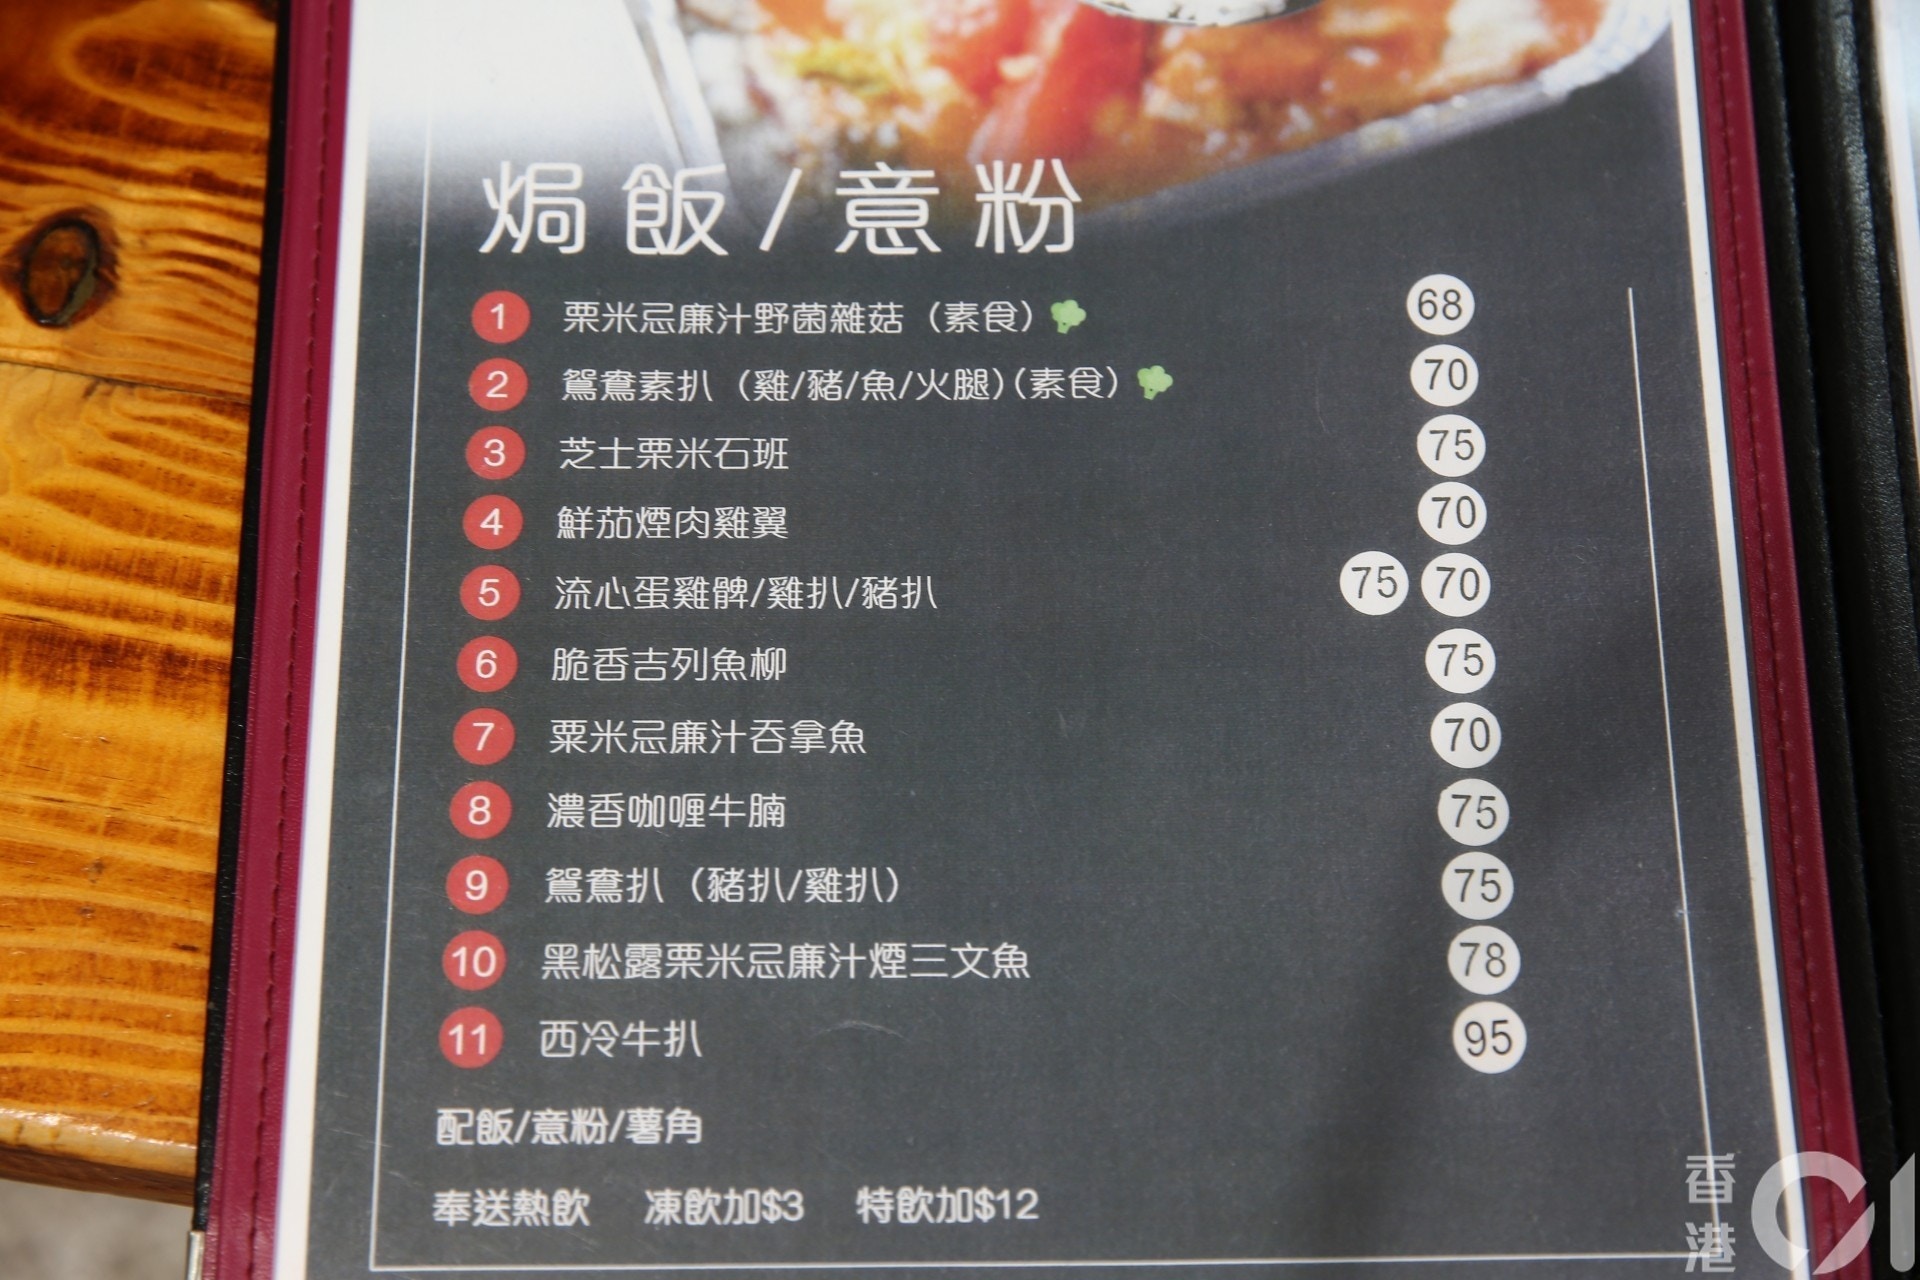 海關巡查7間食肆揭石斑為鯰魚 鮑魚是魷魚7人被捕 香港01 突發